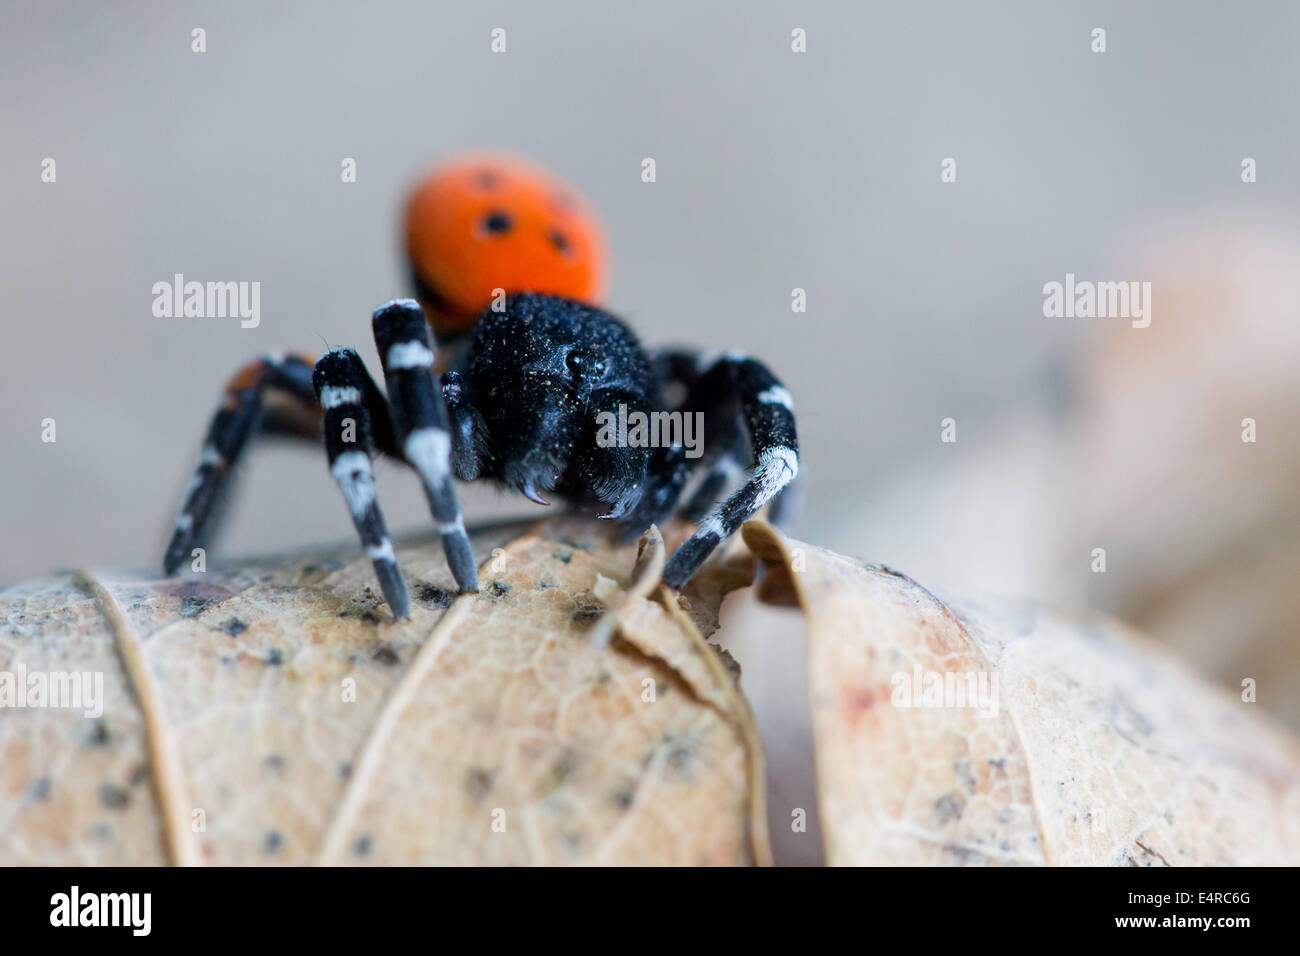 Rote Röhrenspinne, Eresus kollari, Eresus cinnaberinus, Eresus niger, Ladybird Spider Stock Photo